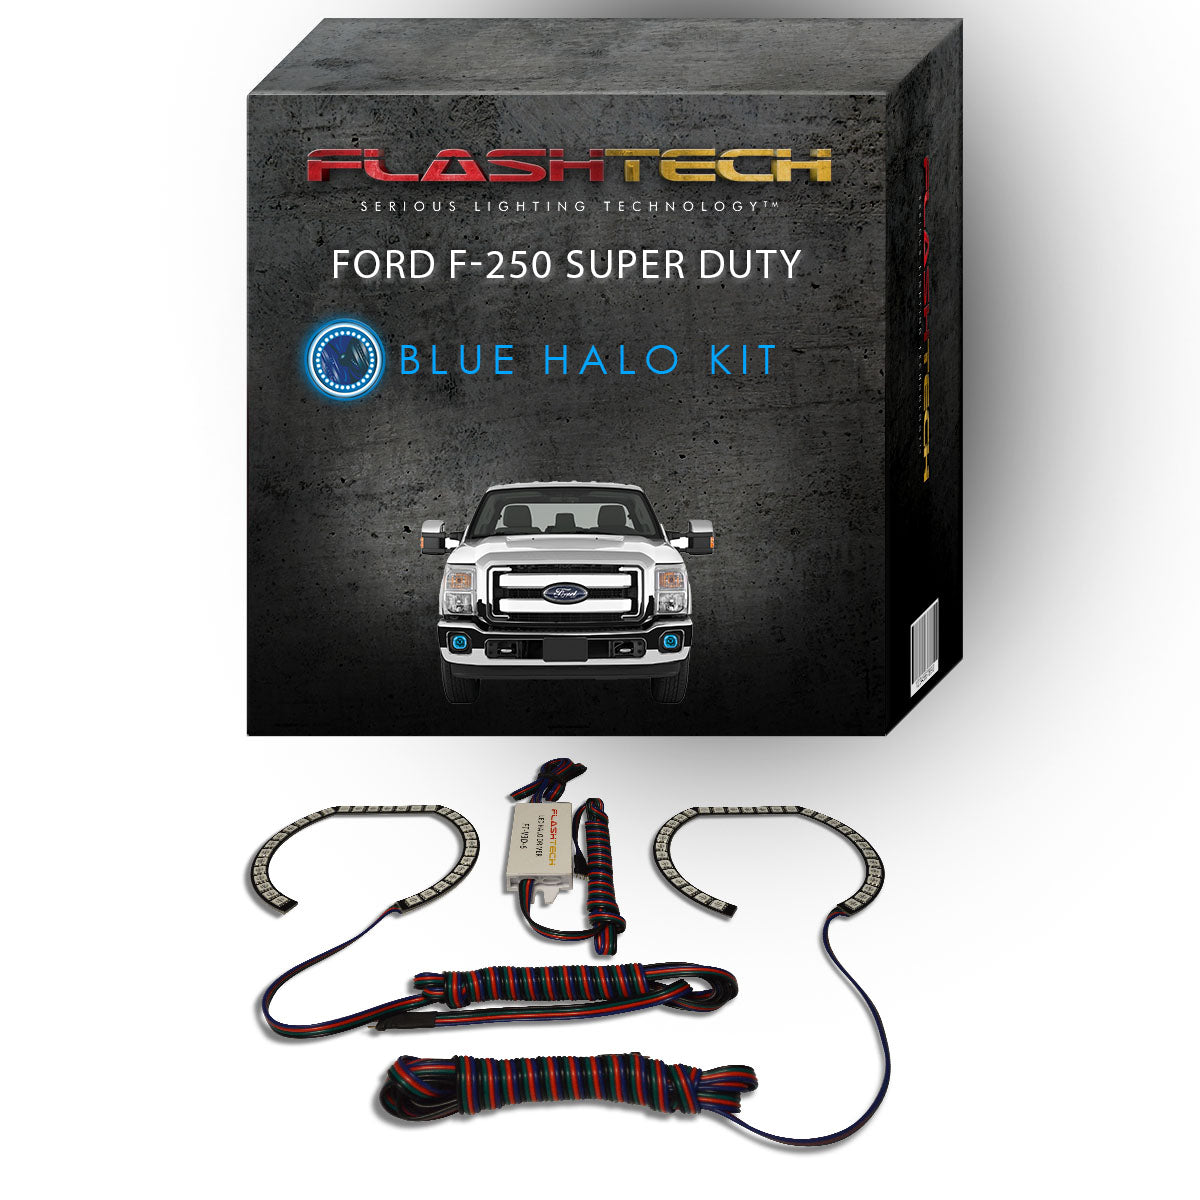 Ford-F-250 Super Duty-2011, 2012, 2013, 2014, 2015-LED-Halo-Fog Lights-RGB-No Remote-FO-F201115-V3F